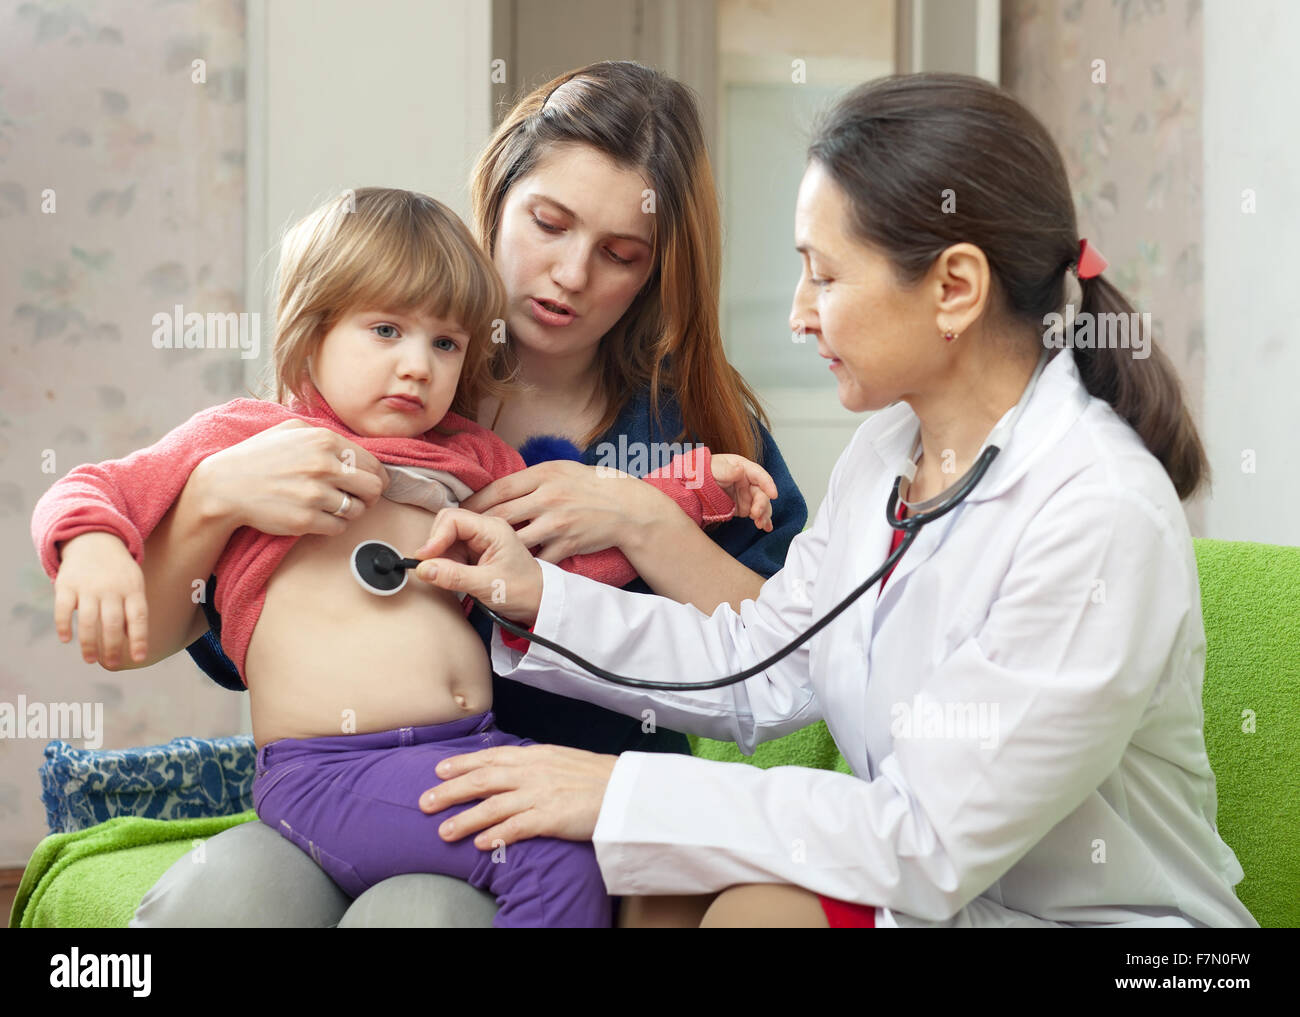 Дети врачей новости. Осмотр ребенка. Врач осматривает ребенка. Детский врач педиатр. Педиатры в доме ребенка.